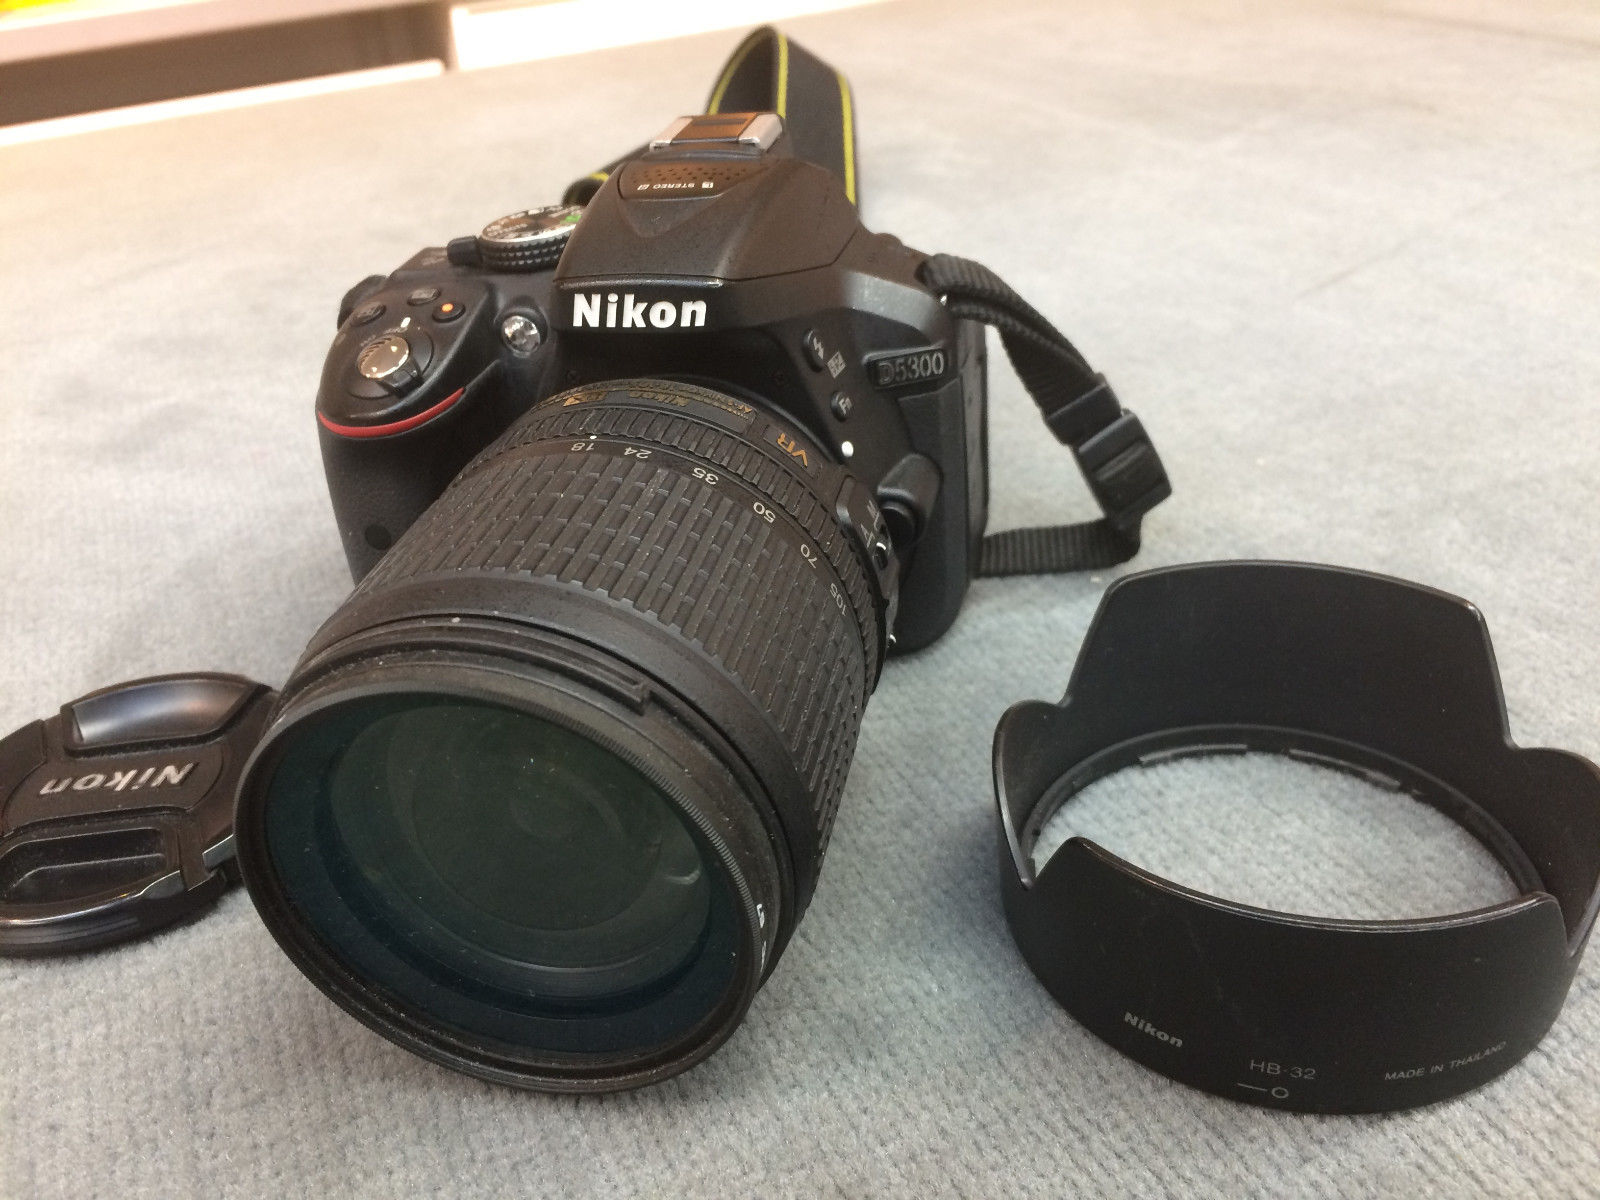 Nikon D D5300 24.2 MP SLR-Digitalkamera - Schwarz (Kit m/ AF-S DX 18-105mm f/3.5